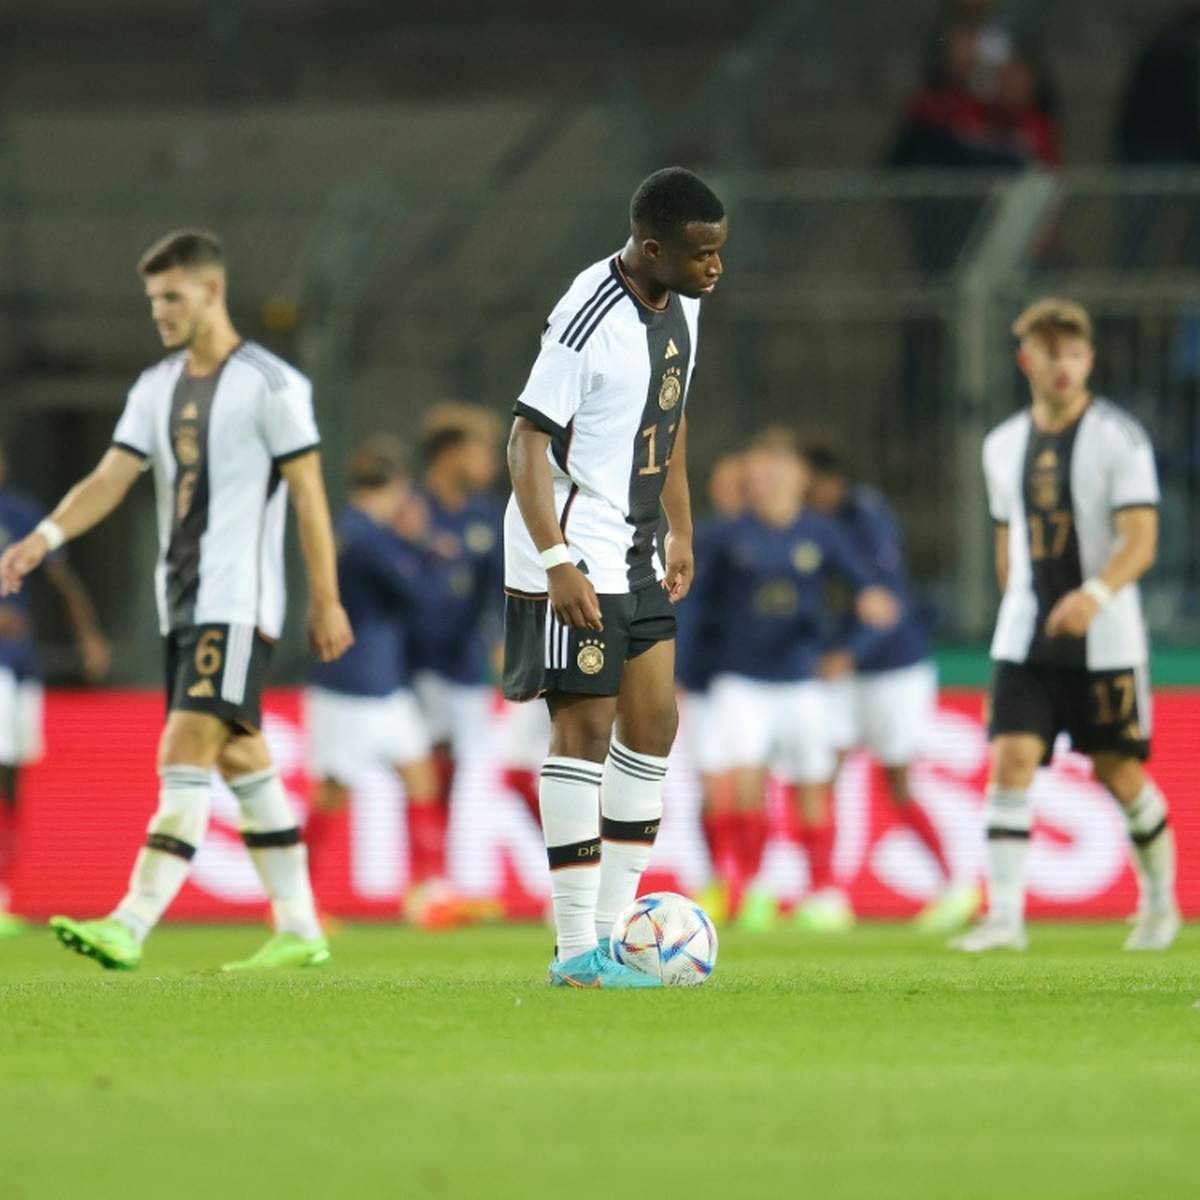 Die deutsche U21 verliert beim Jubiläum von Trainer Antonio Di Salvo. Youssoufa Moukoko und Co. offenbaren vor allem in der Offensive Probleme.